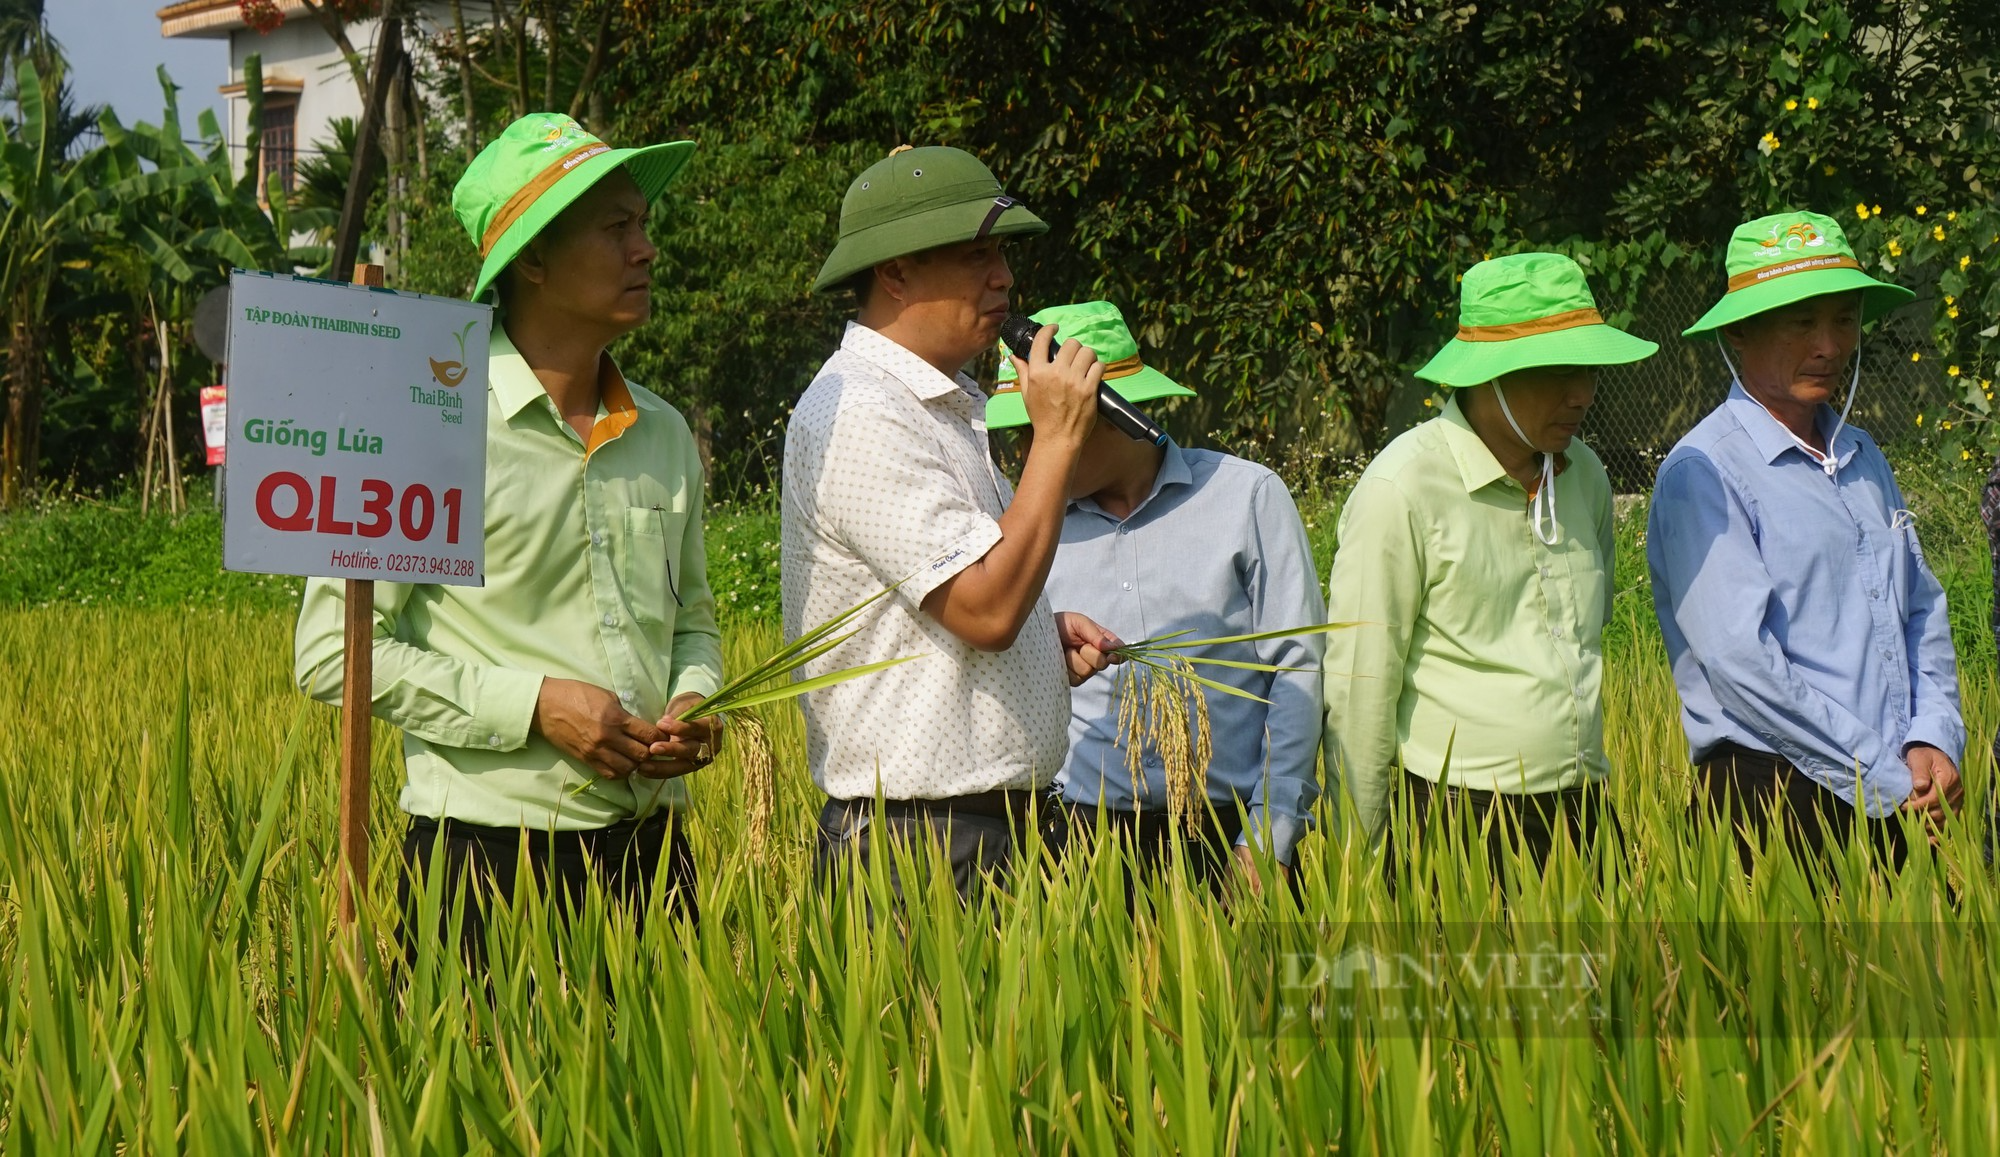 Bộ giống lúa của ThaiBinh Seed khẳng định chất lượng, cho năng suất vượt trội trên những cánh đồng Nghệ An - Ảnh 6.